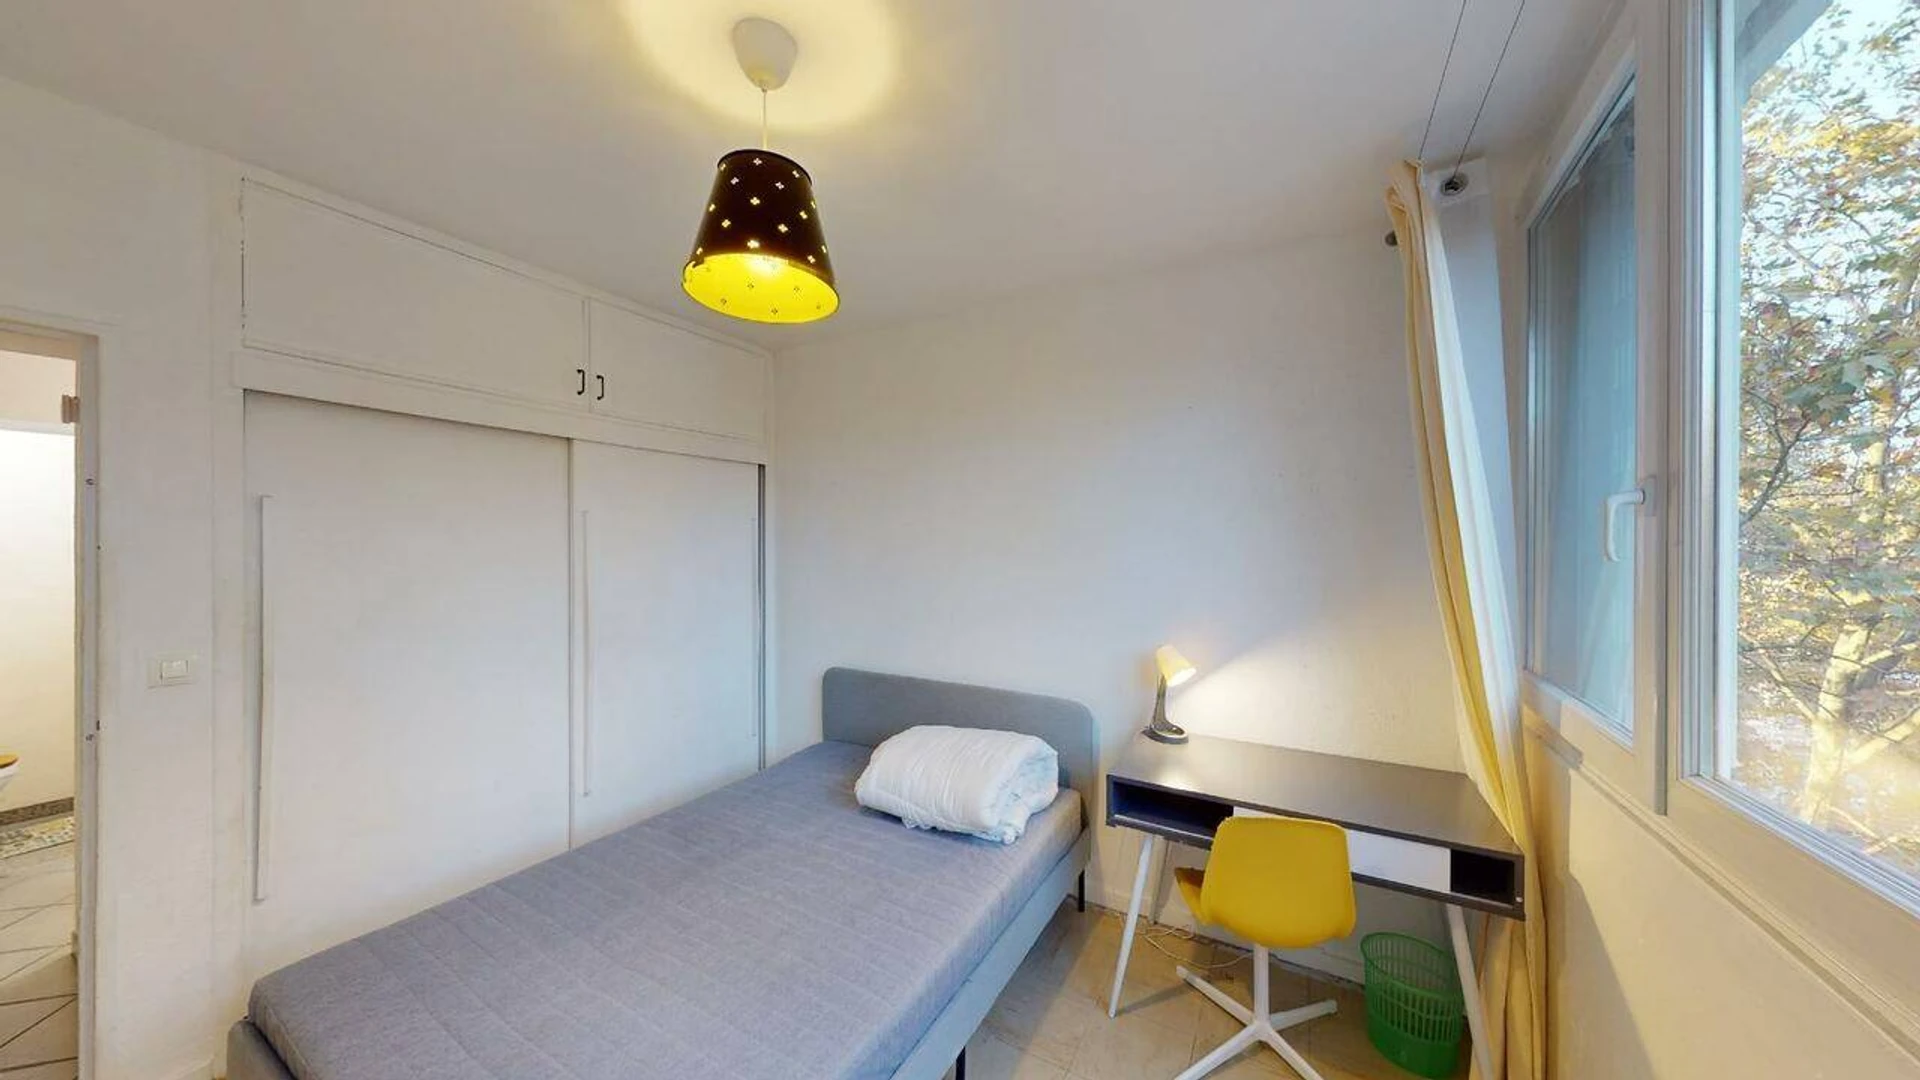 Habitación en alquiler con cama doble Limoges